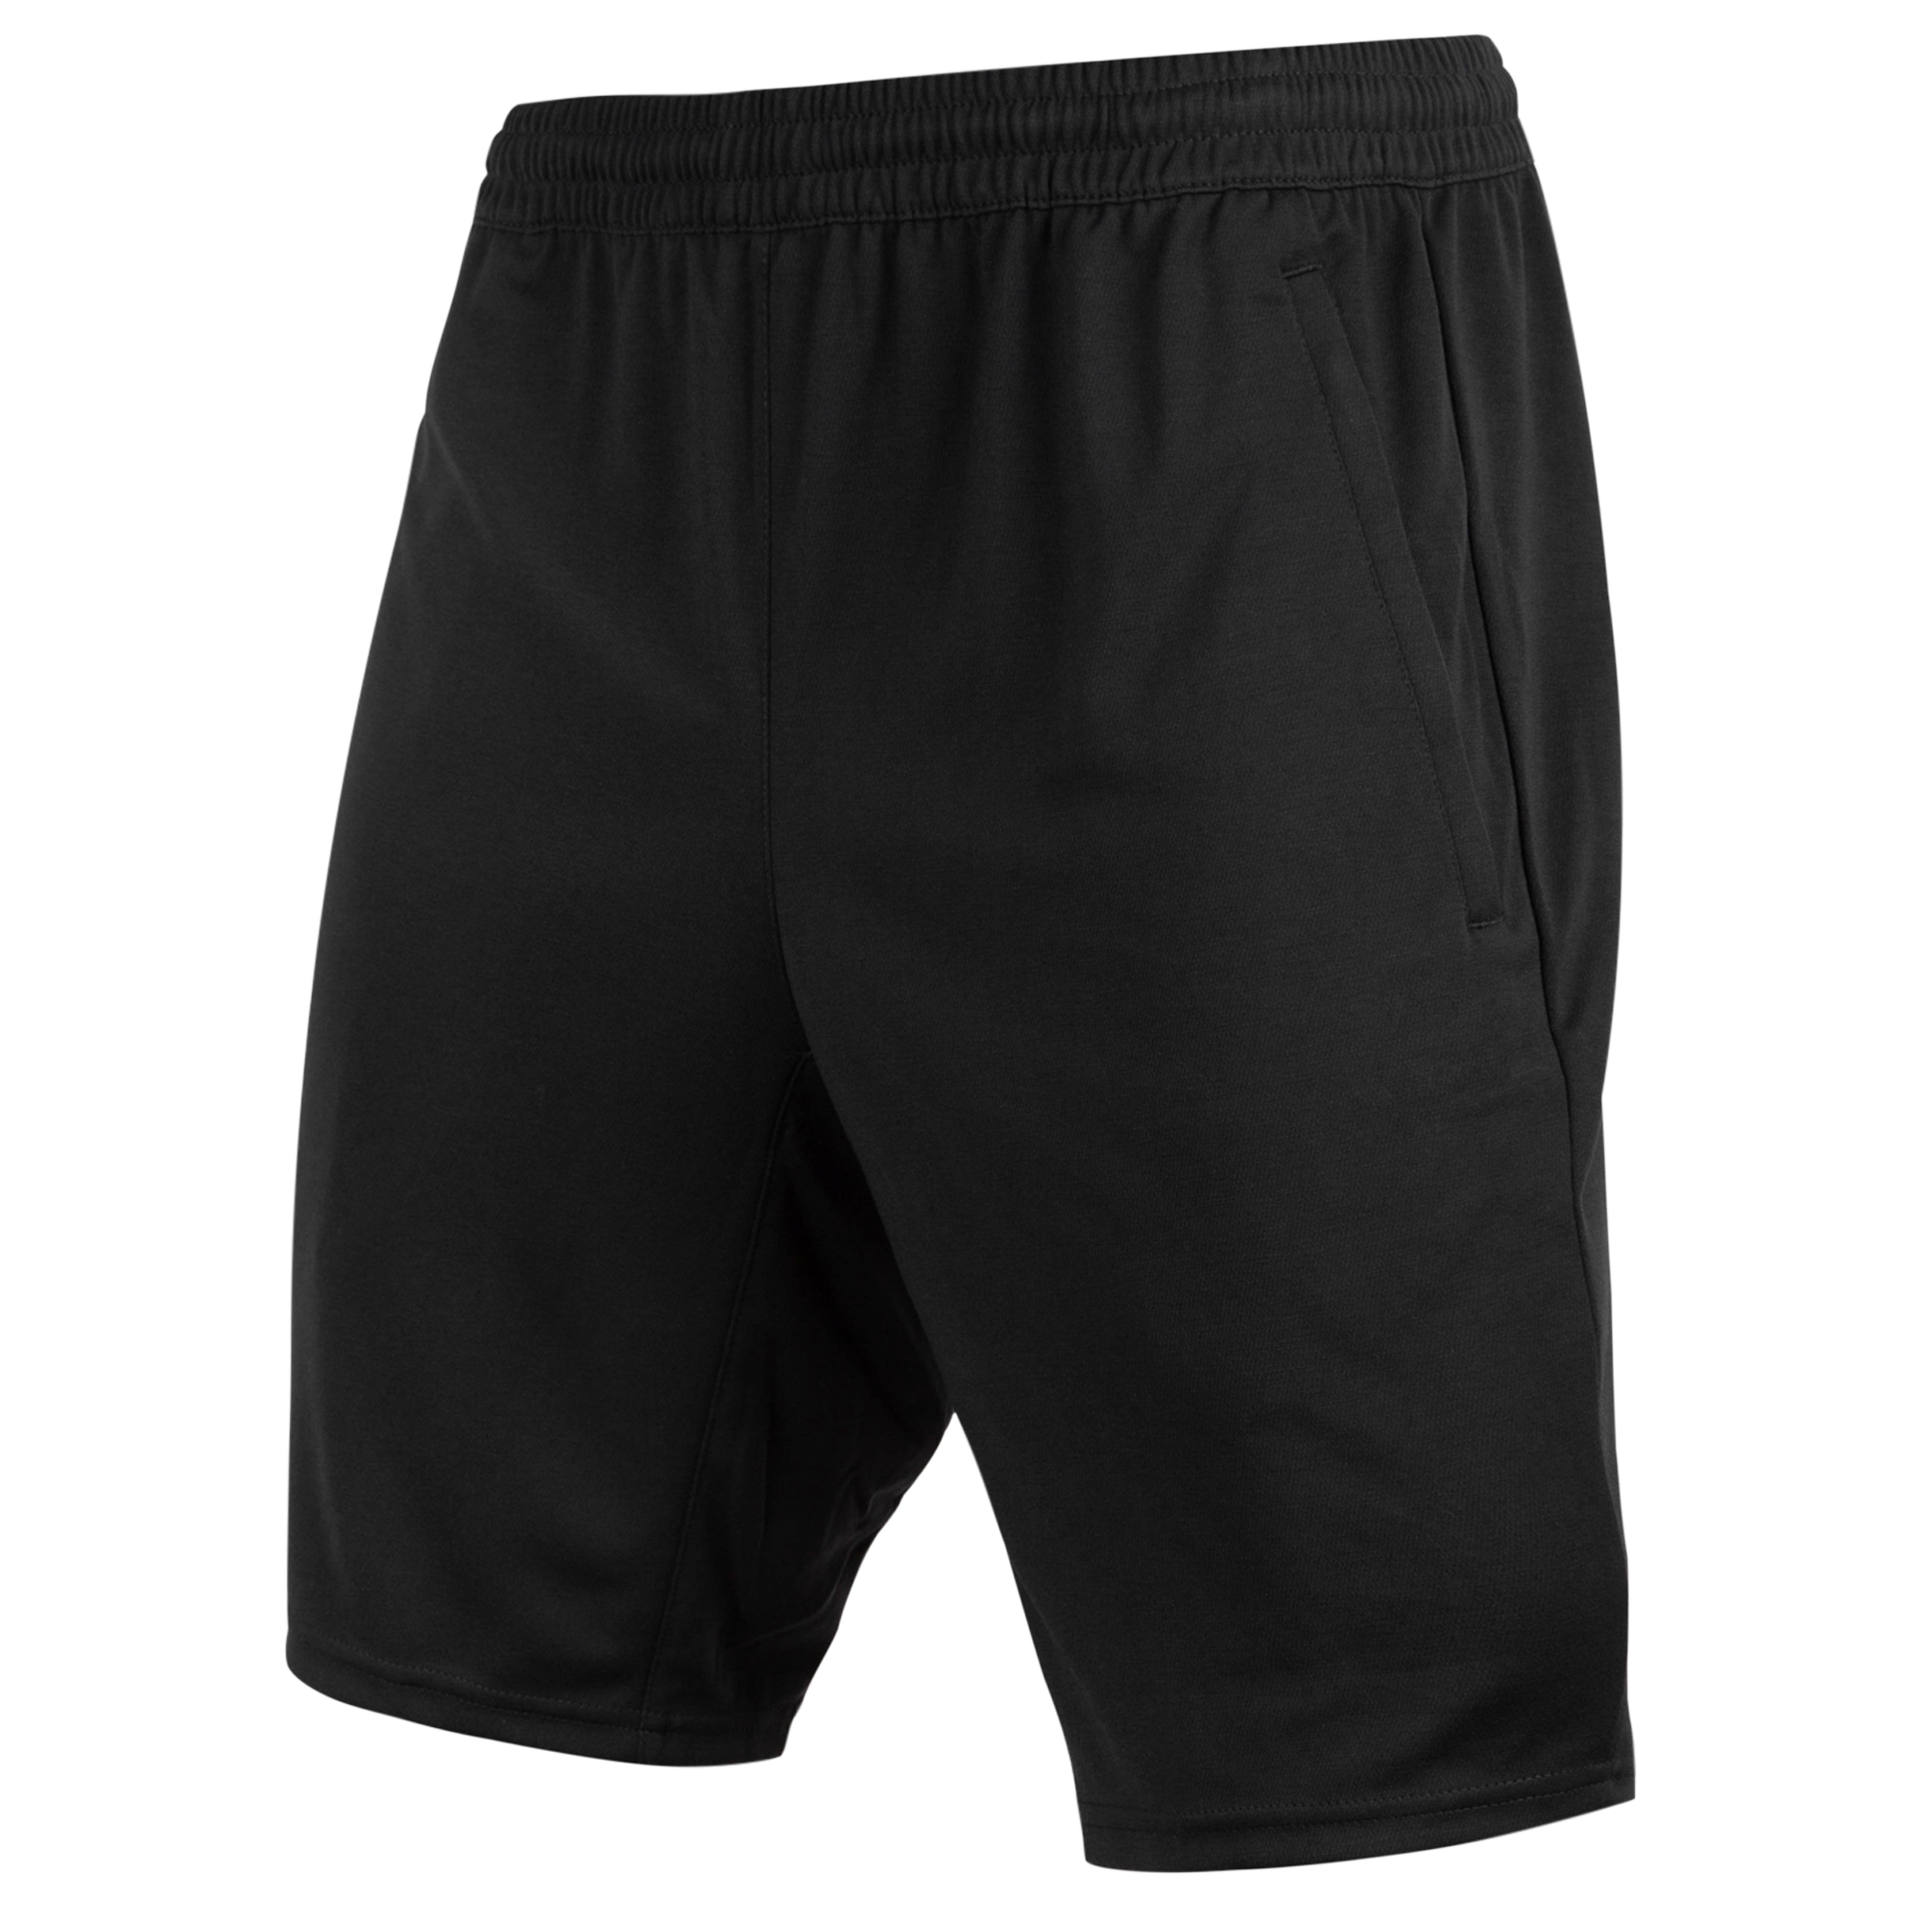 Black shorts mockup cutout, Png file 8533239 PNG